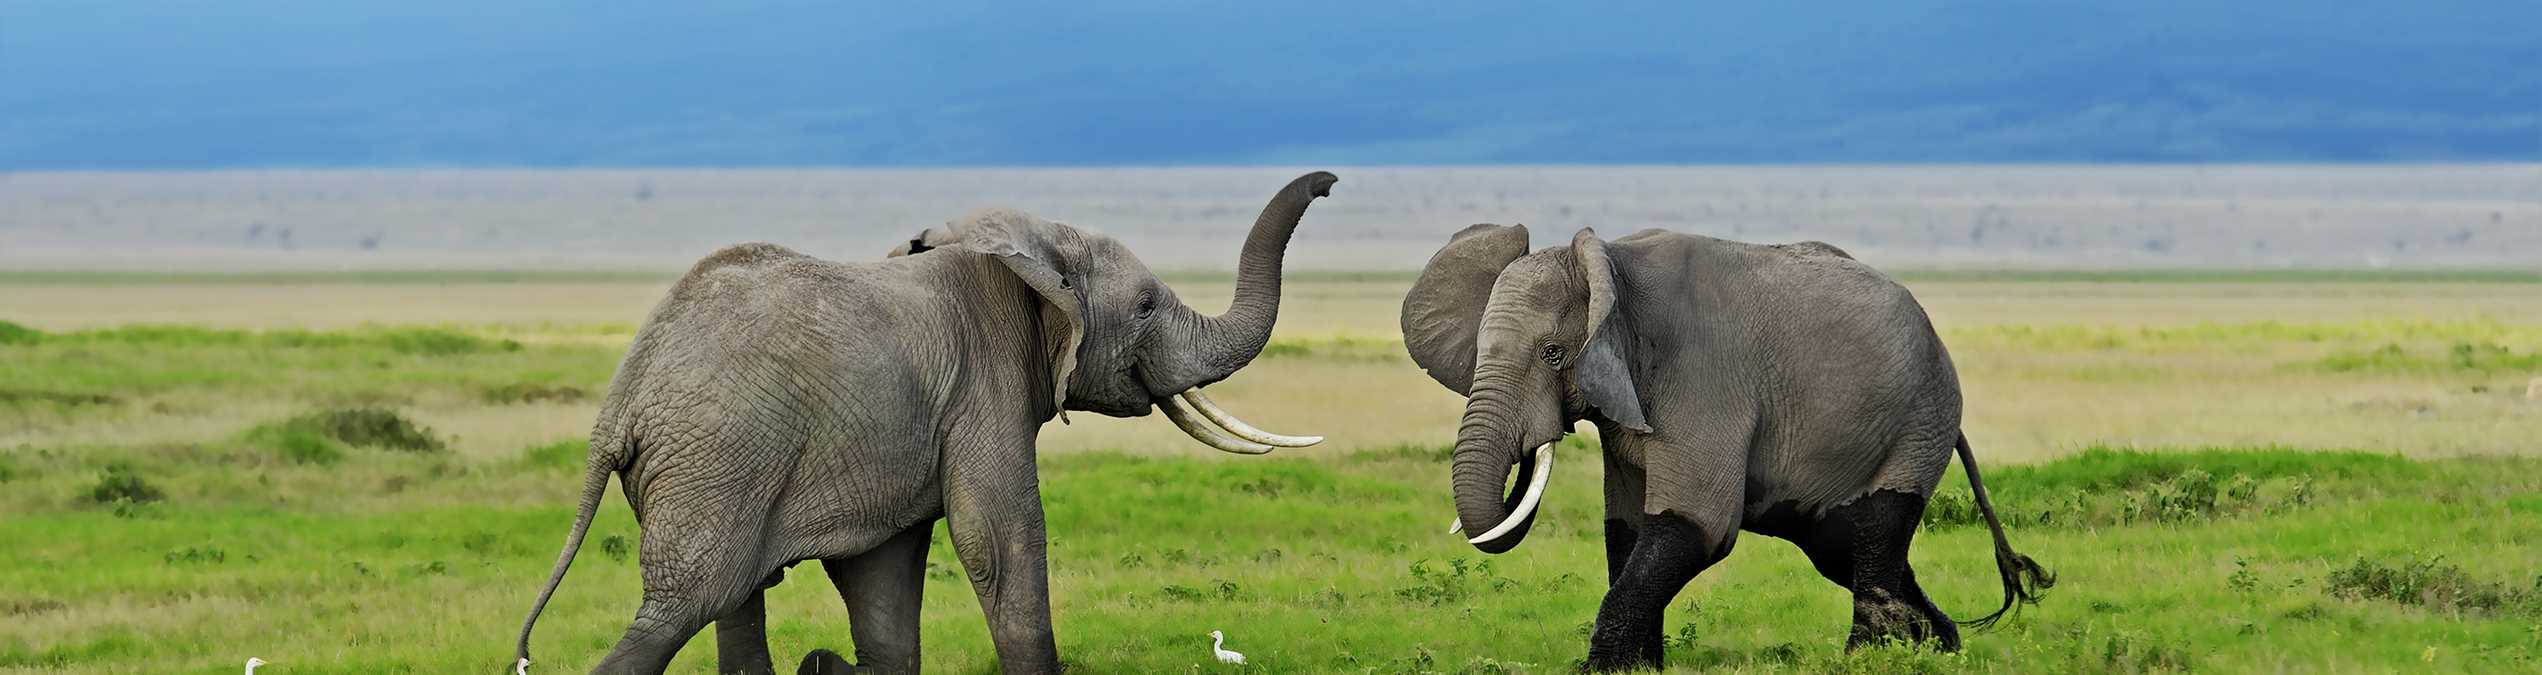 Safari Club - Kenya_Amboseli